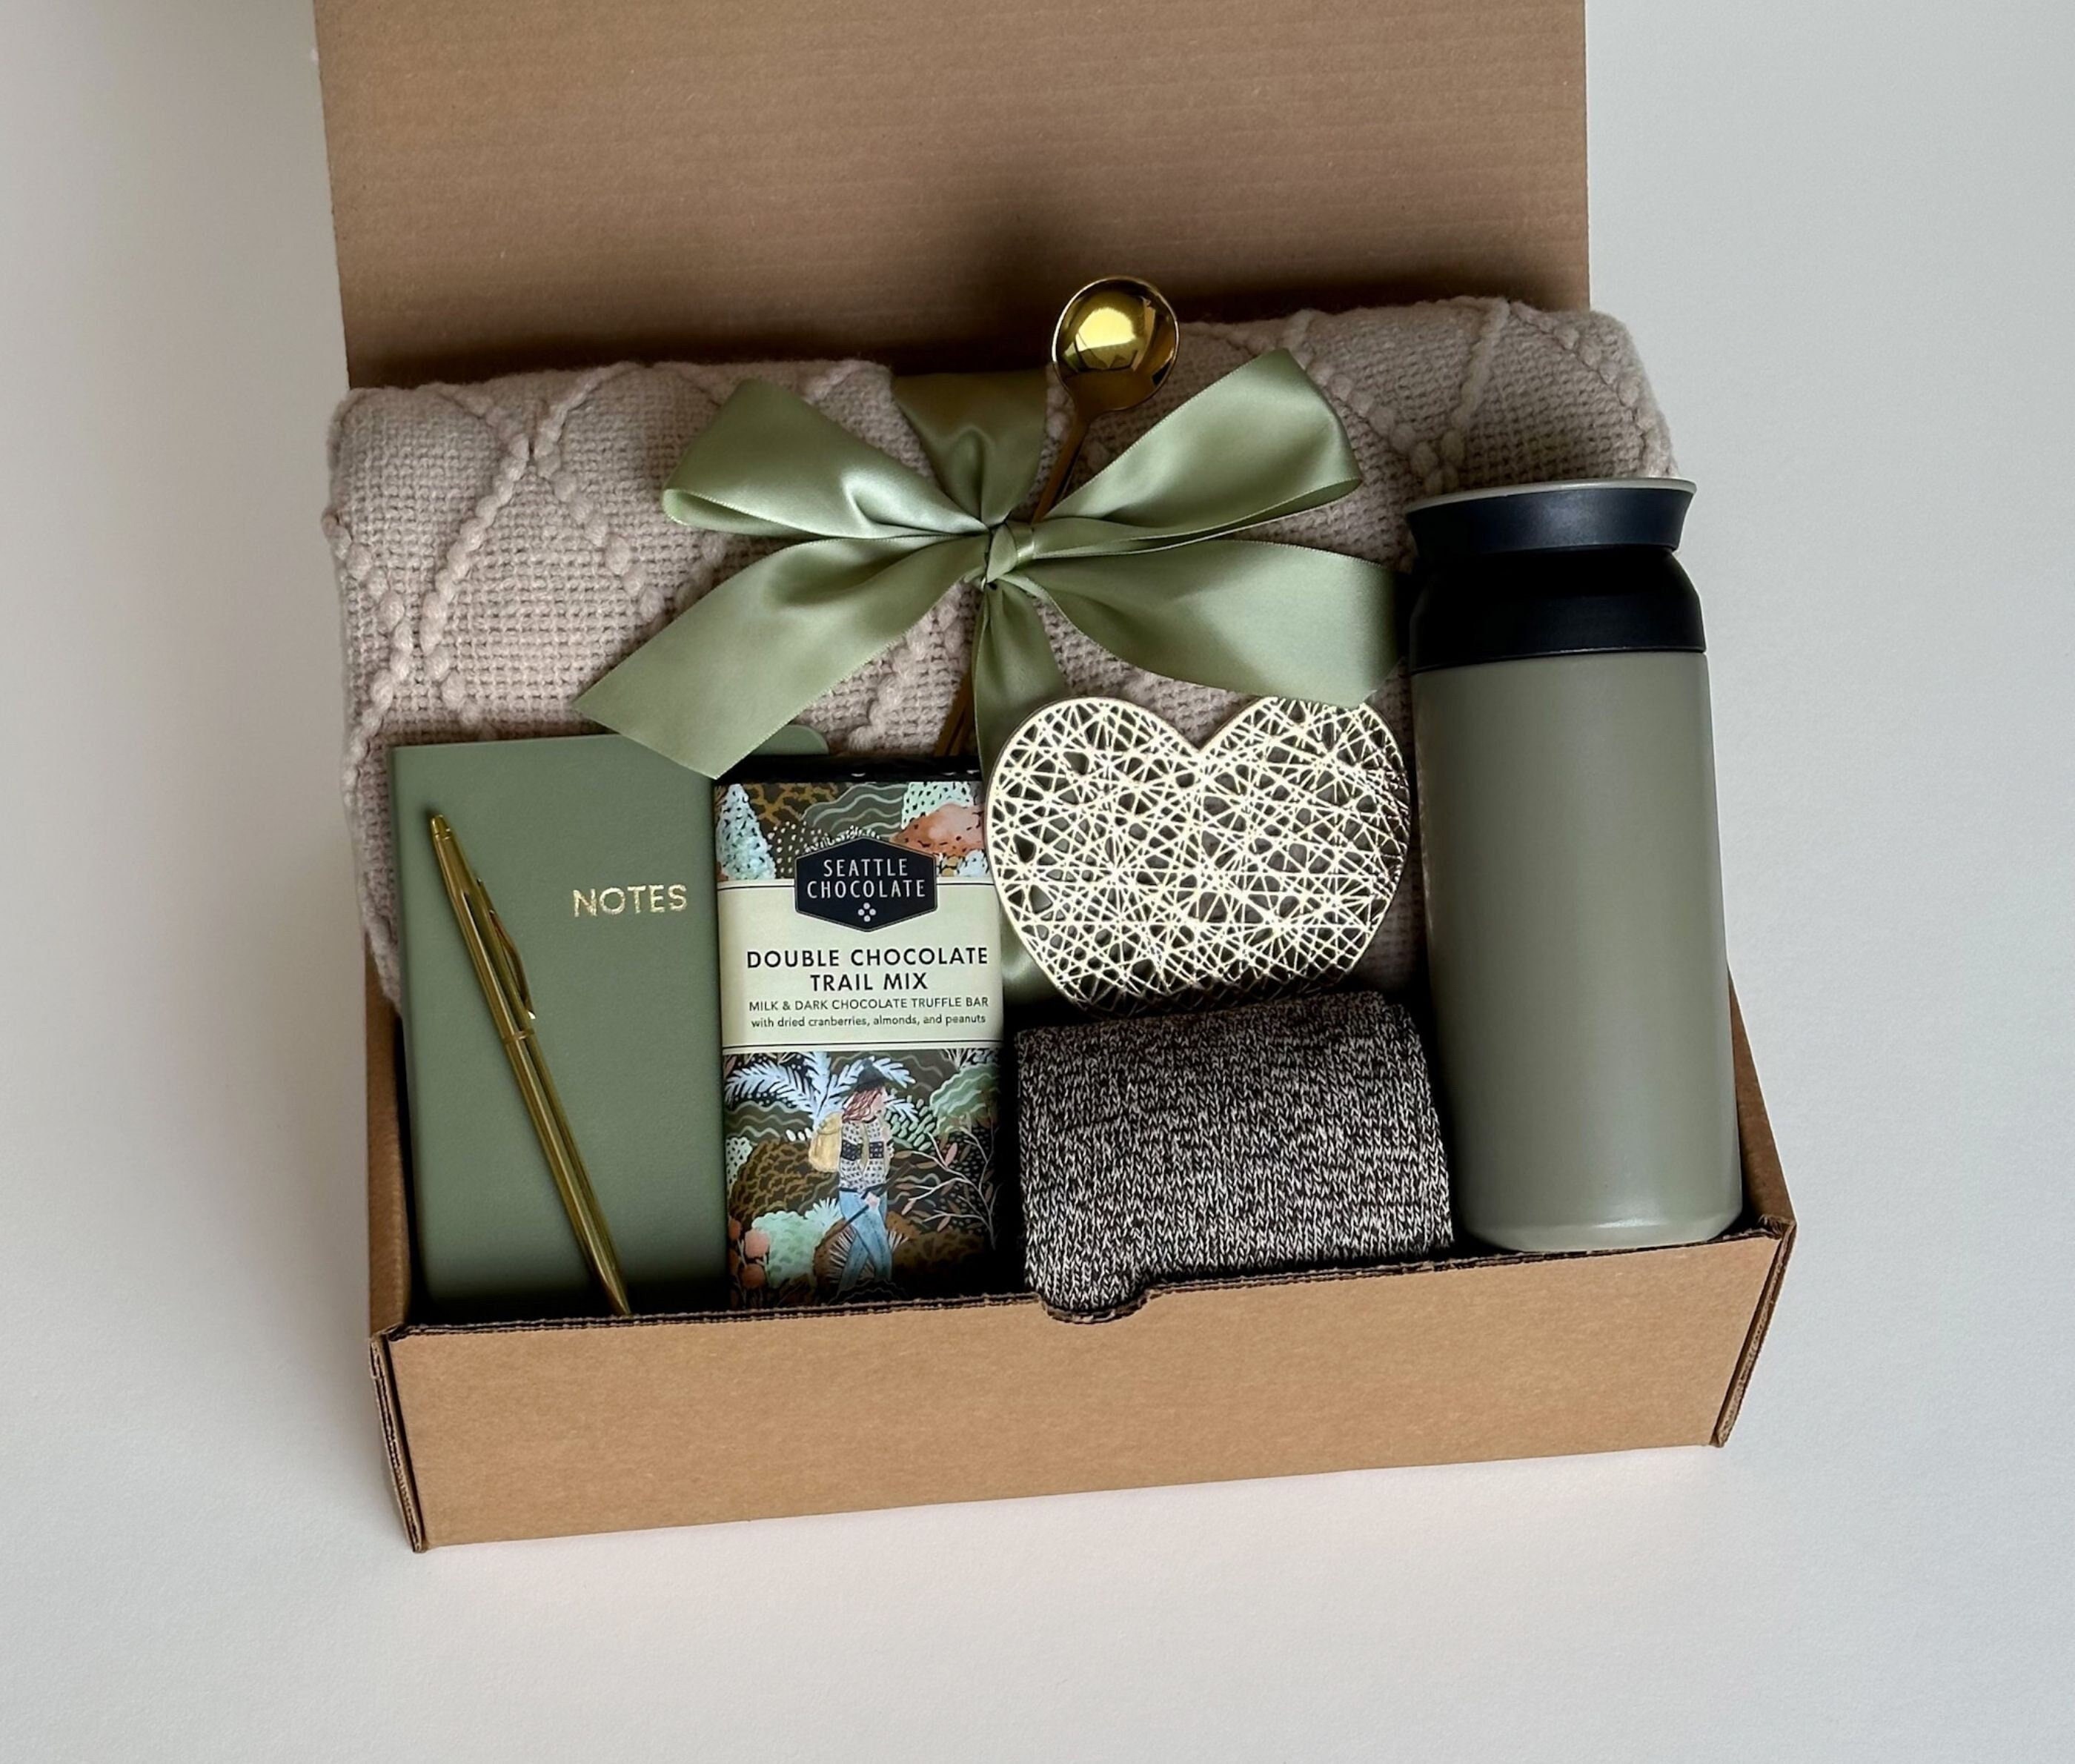 Gimber coffret Gift box – PAMbio